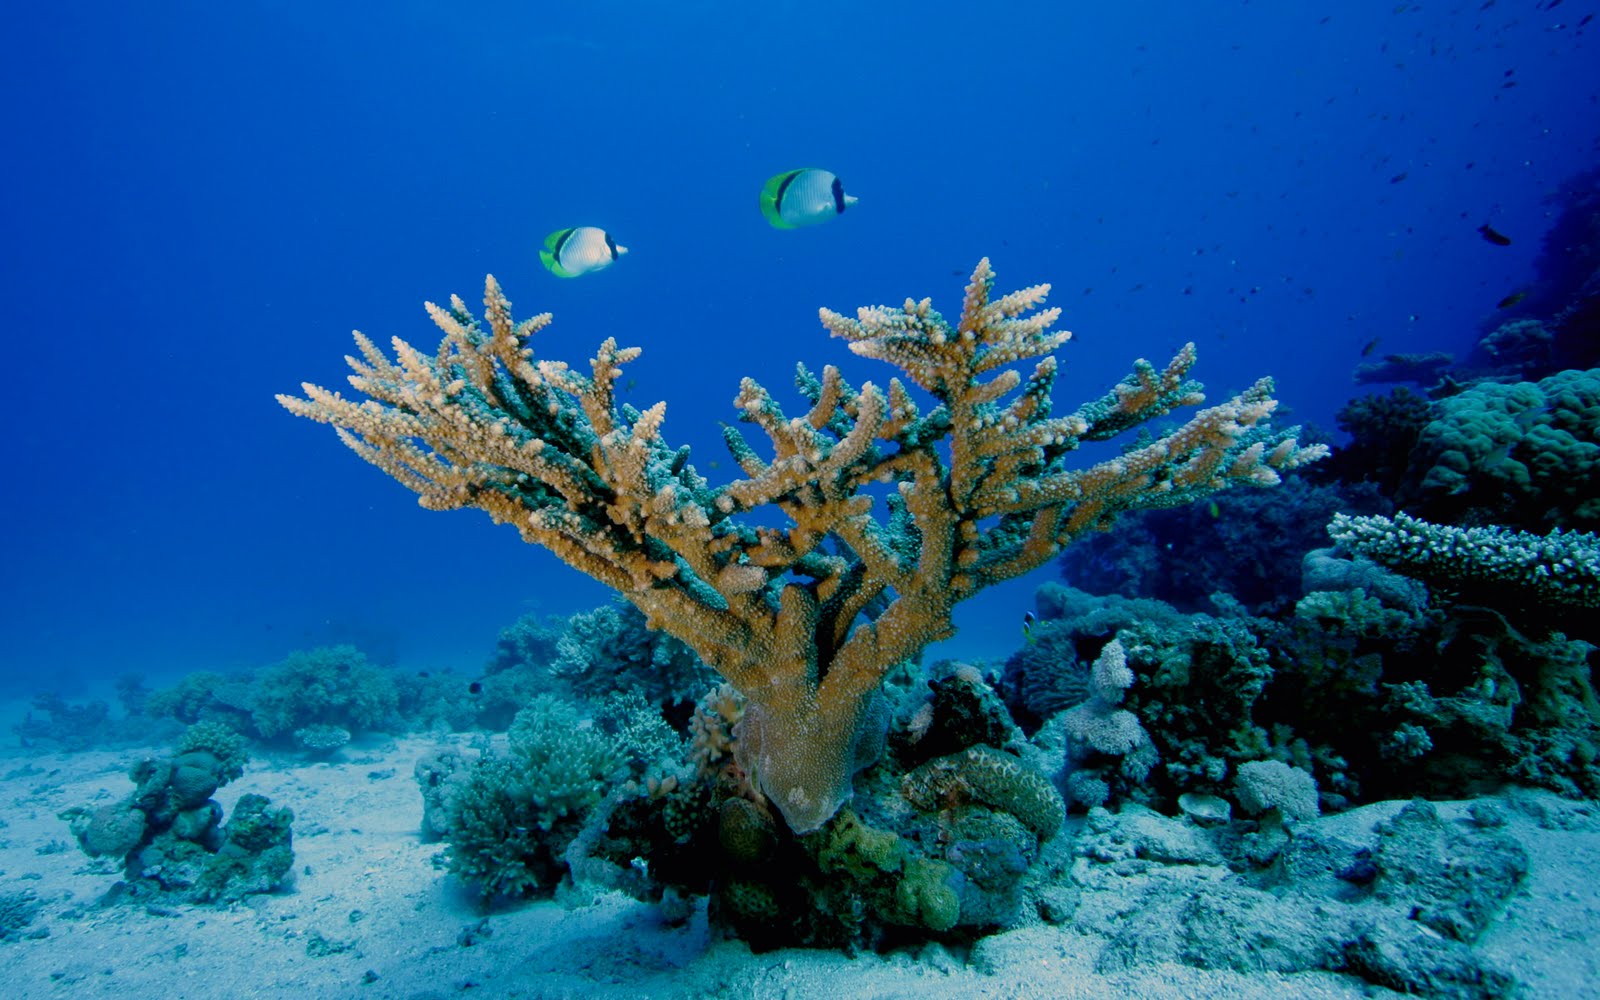 underwater hd wallpaper,reef,coral reef,underwater,marine biology,coral